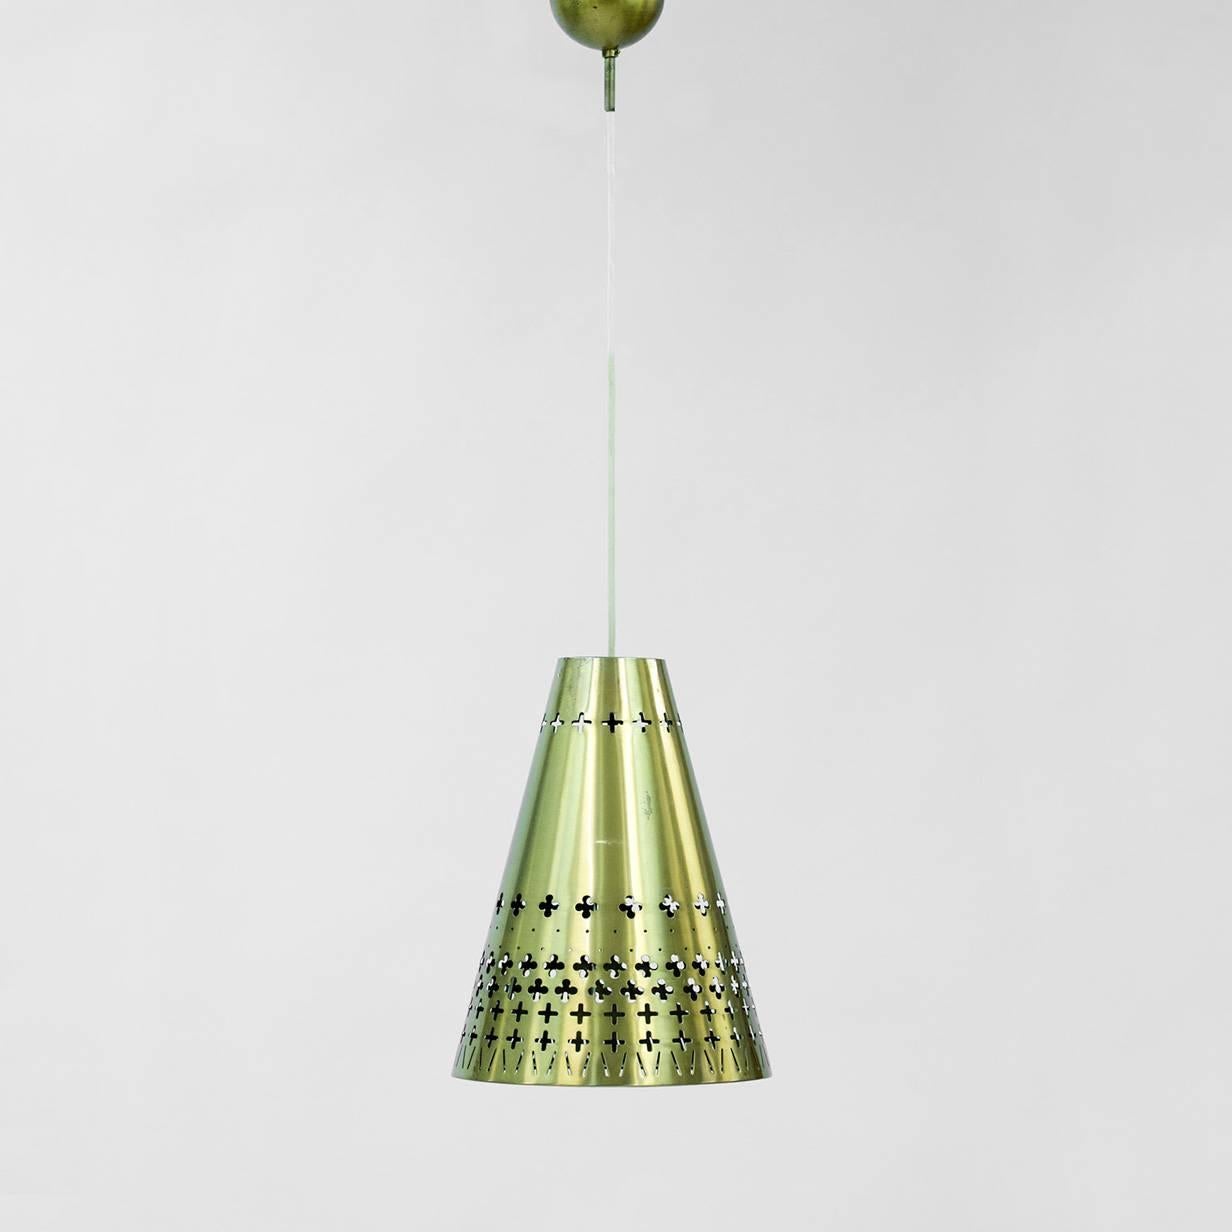 Magnifique lampe pendante conique en laiton de Hans Bergström pour Ateljé Lyktan. Magnifique motif graphique perforé qui laisse passer la lumière de manière spectaculaire. La coupelle pour le câble est également en laiton, ce qui ajoute encore plus